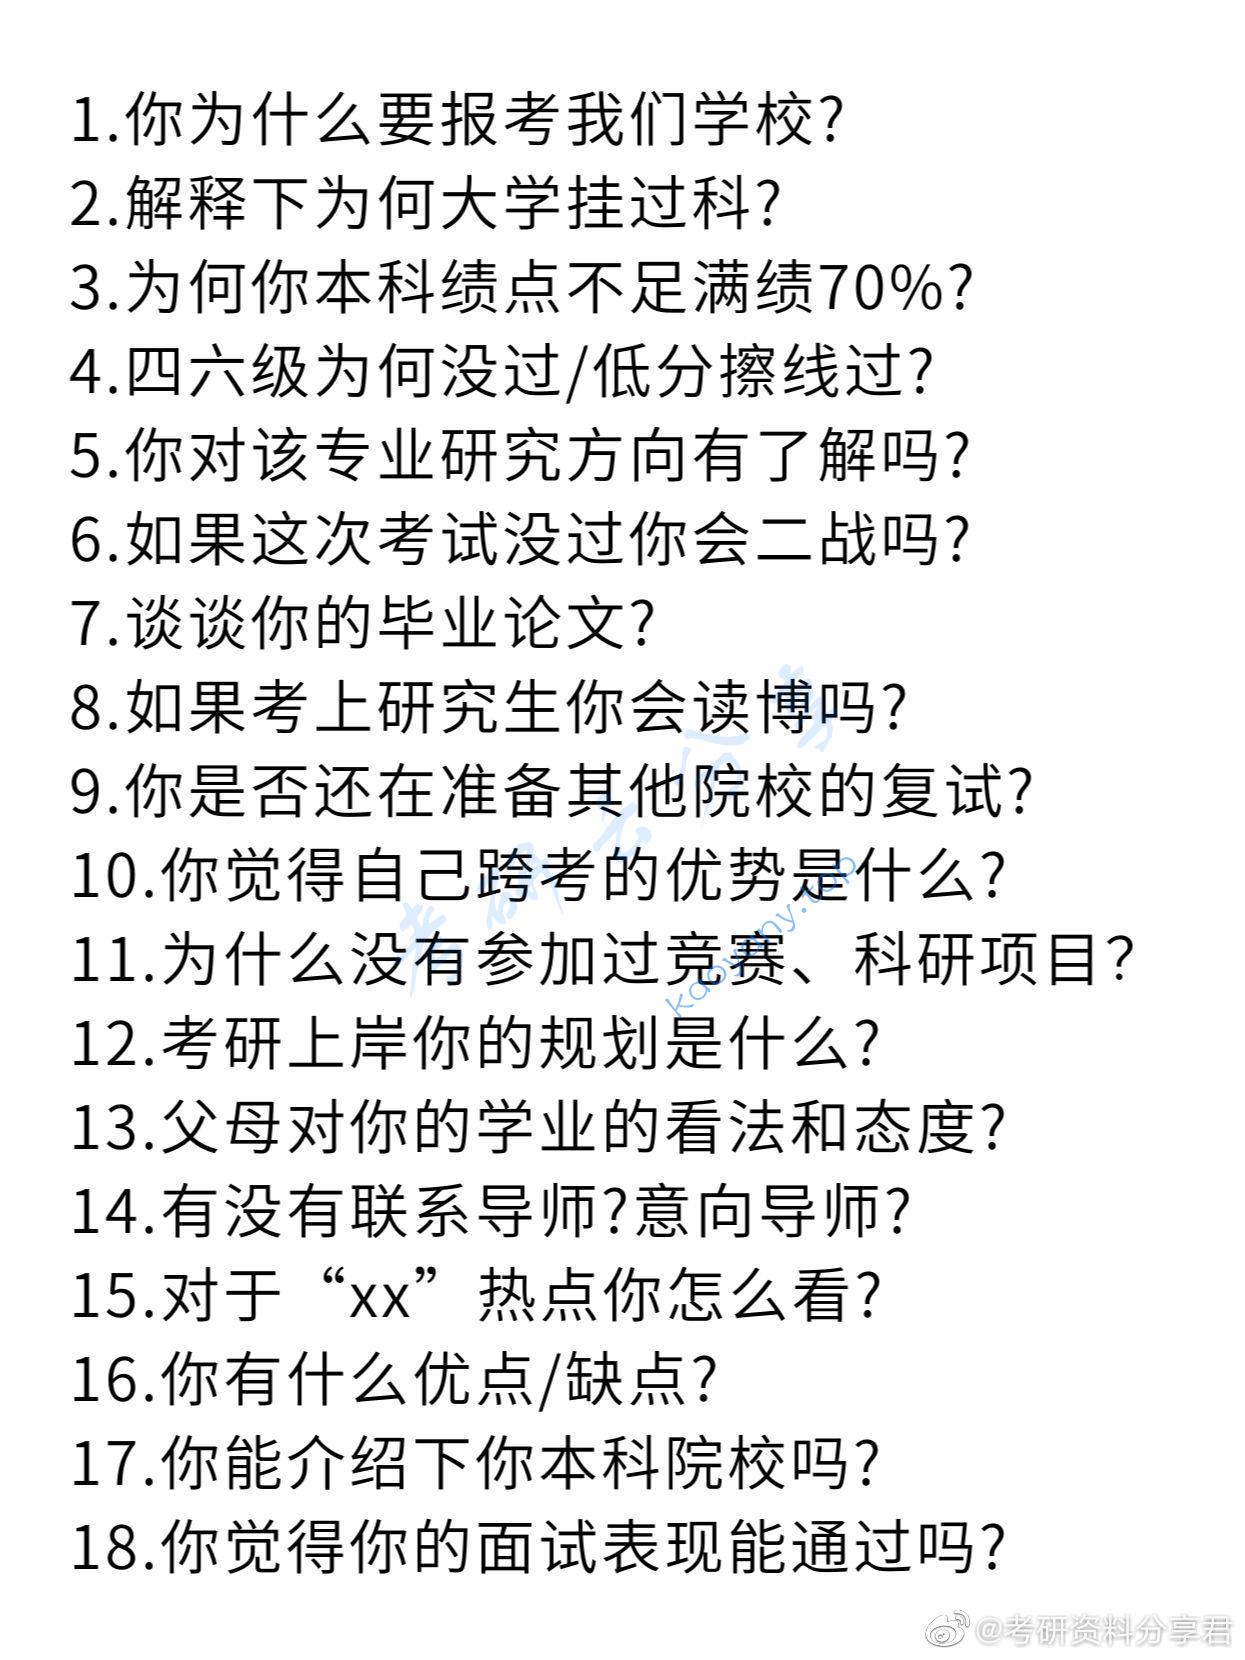 考研复试淘汰率最高的18个问题,d3aed454a139be4c77f570ff0b492968.jpg,考研复试,复试问答,中文常见问题,第1张